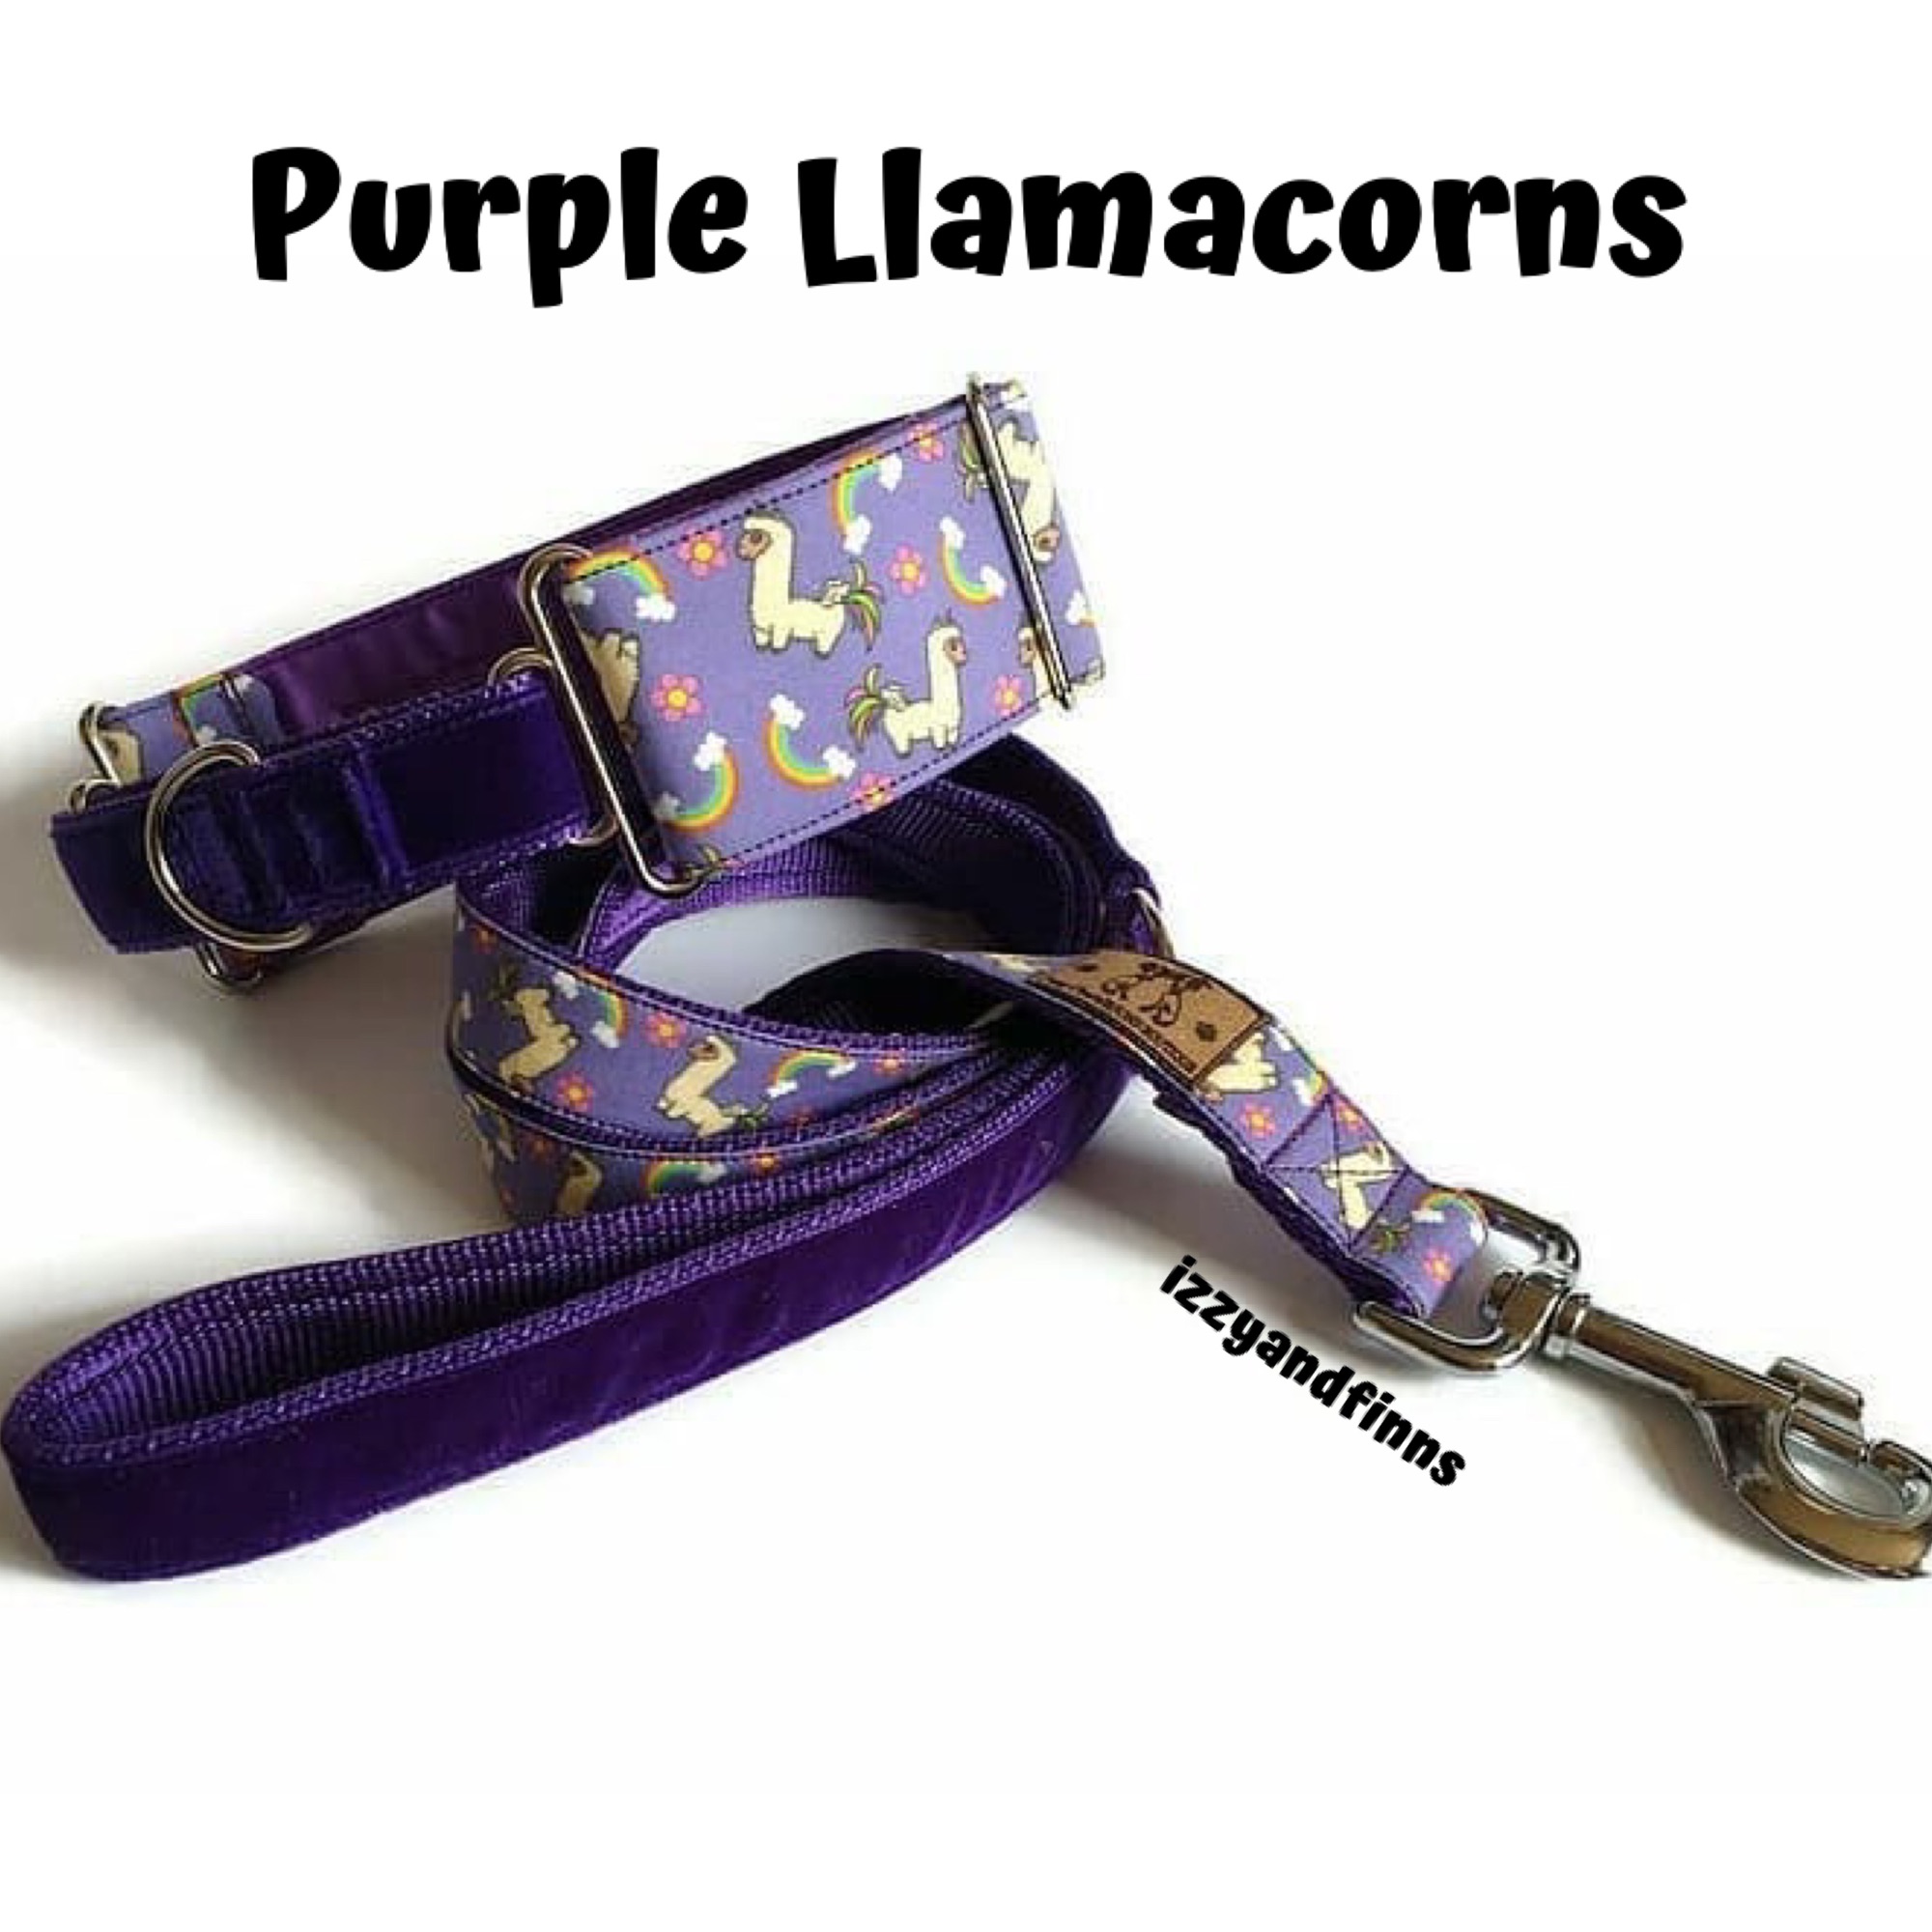 Purple Llamacorns